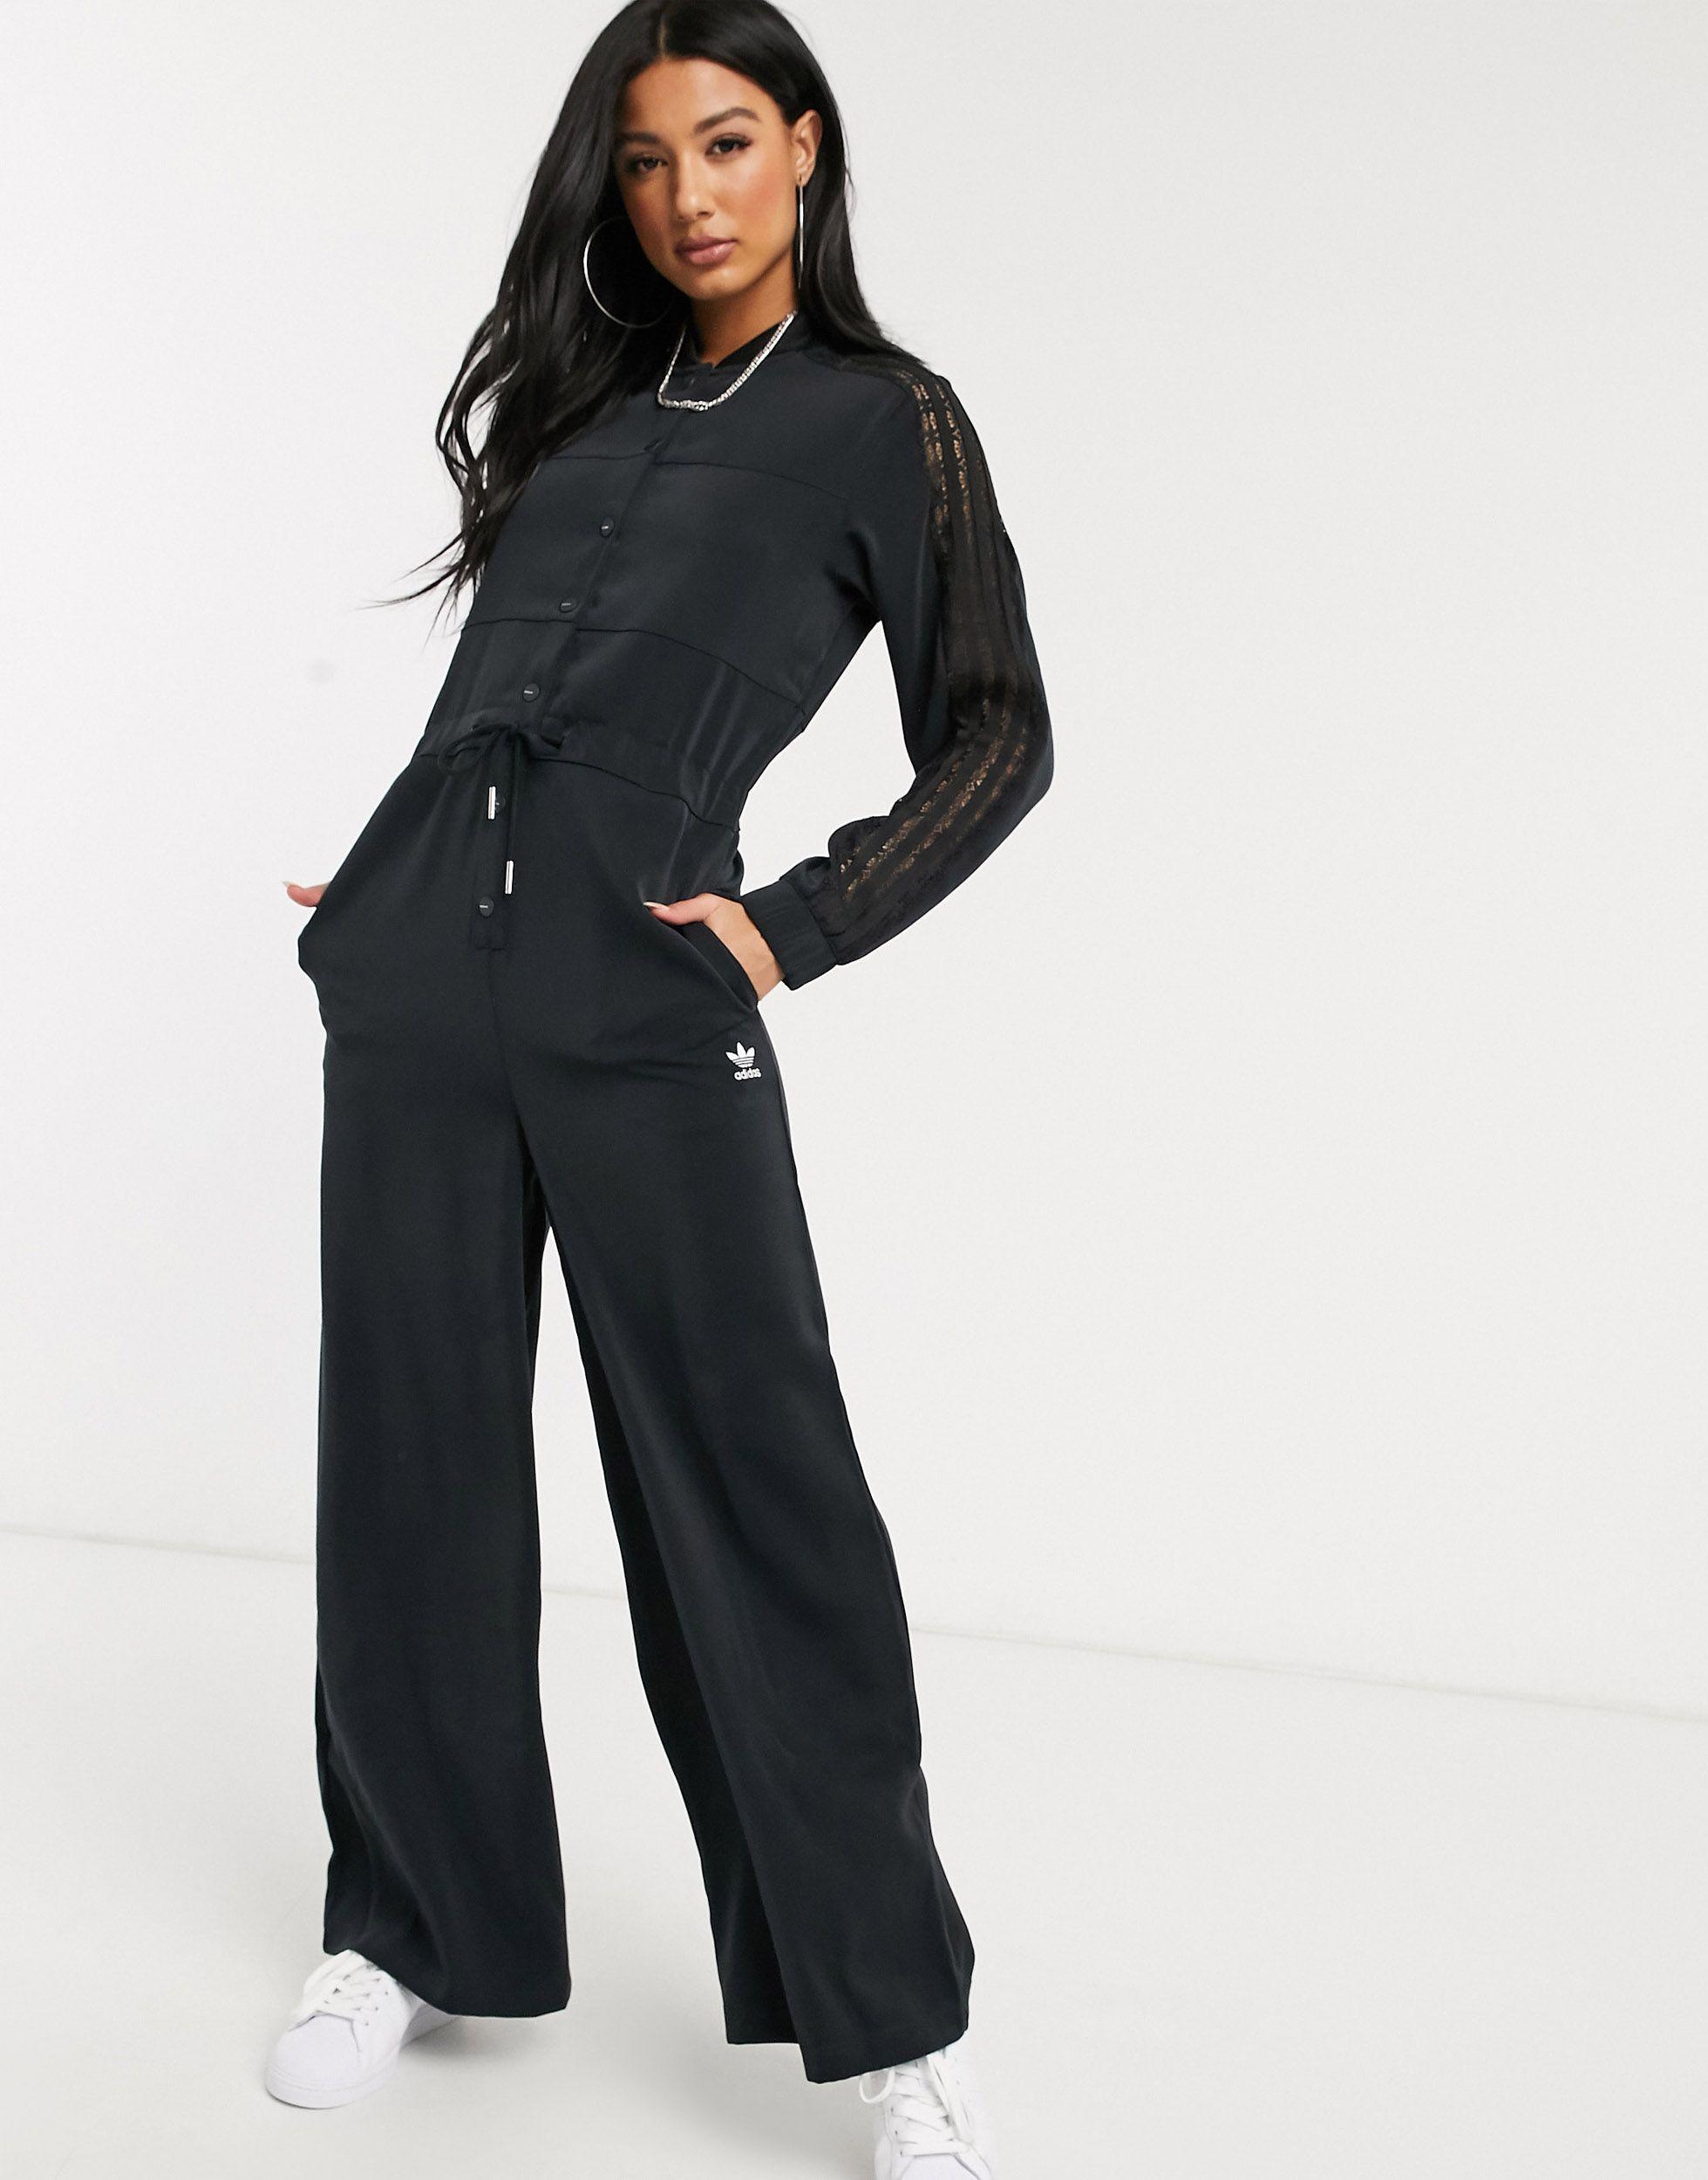 adidas Originals Bellista Lace Insert Jumpsuit in Black | Lyst